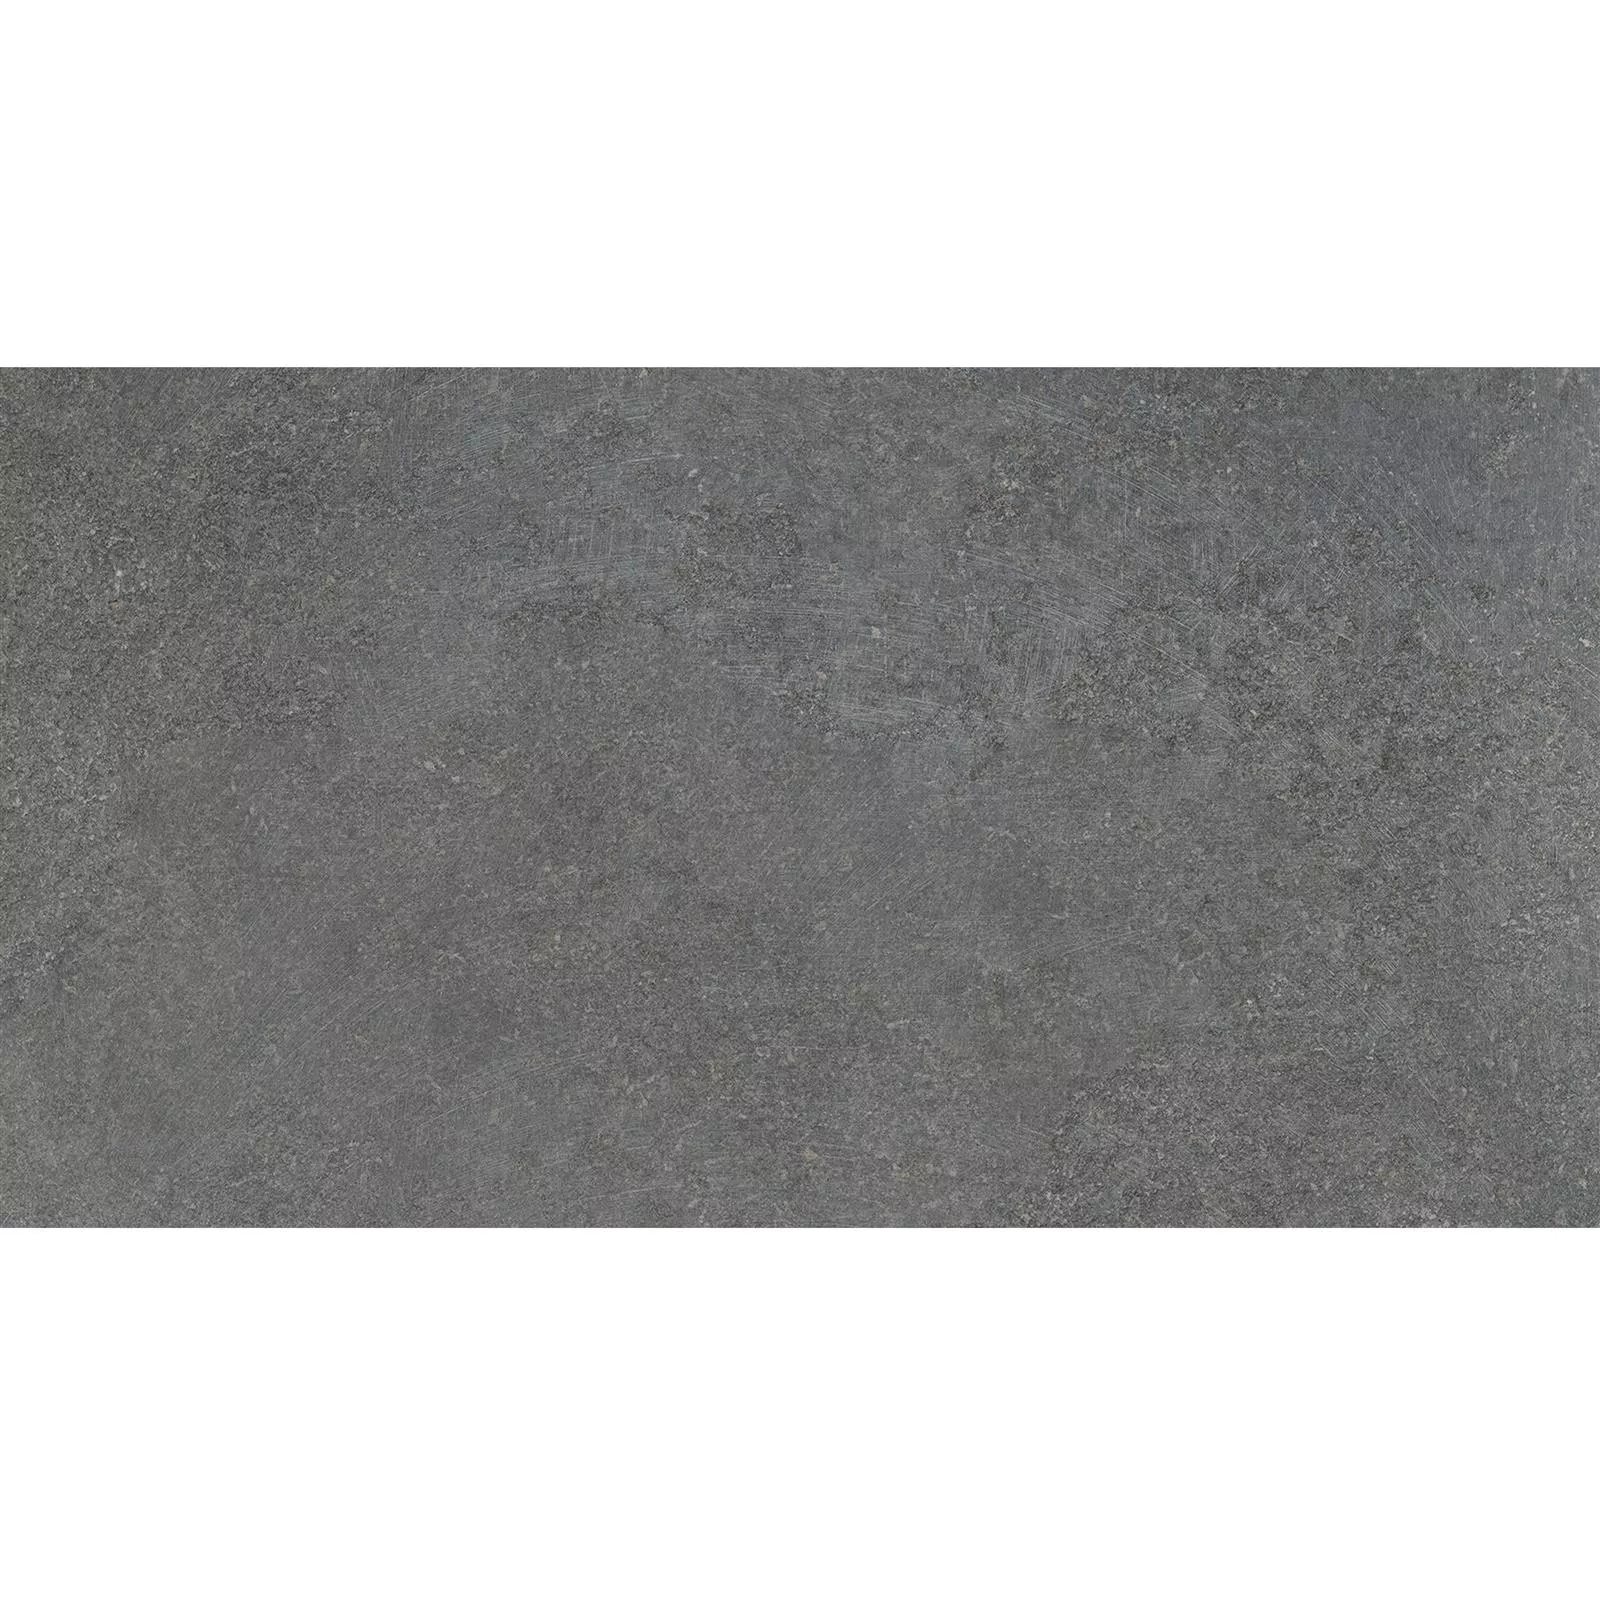 Ladrilhos Olhar de Pedra Horizon Antracite 30x60cm